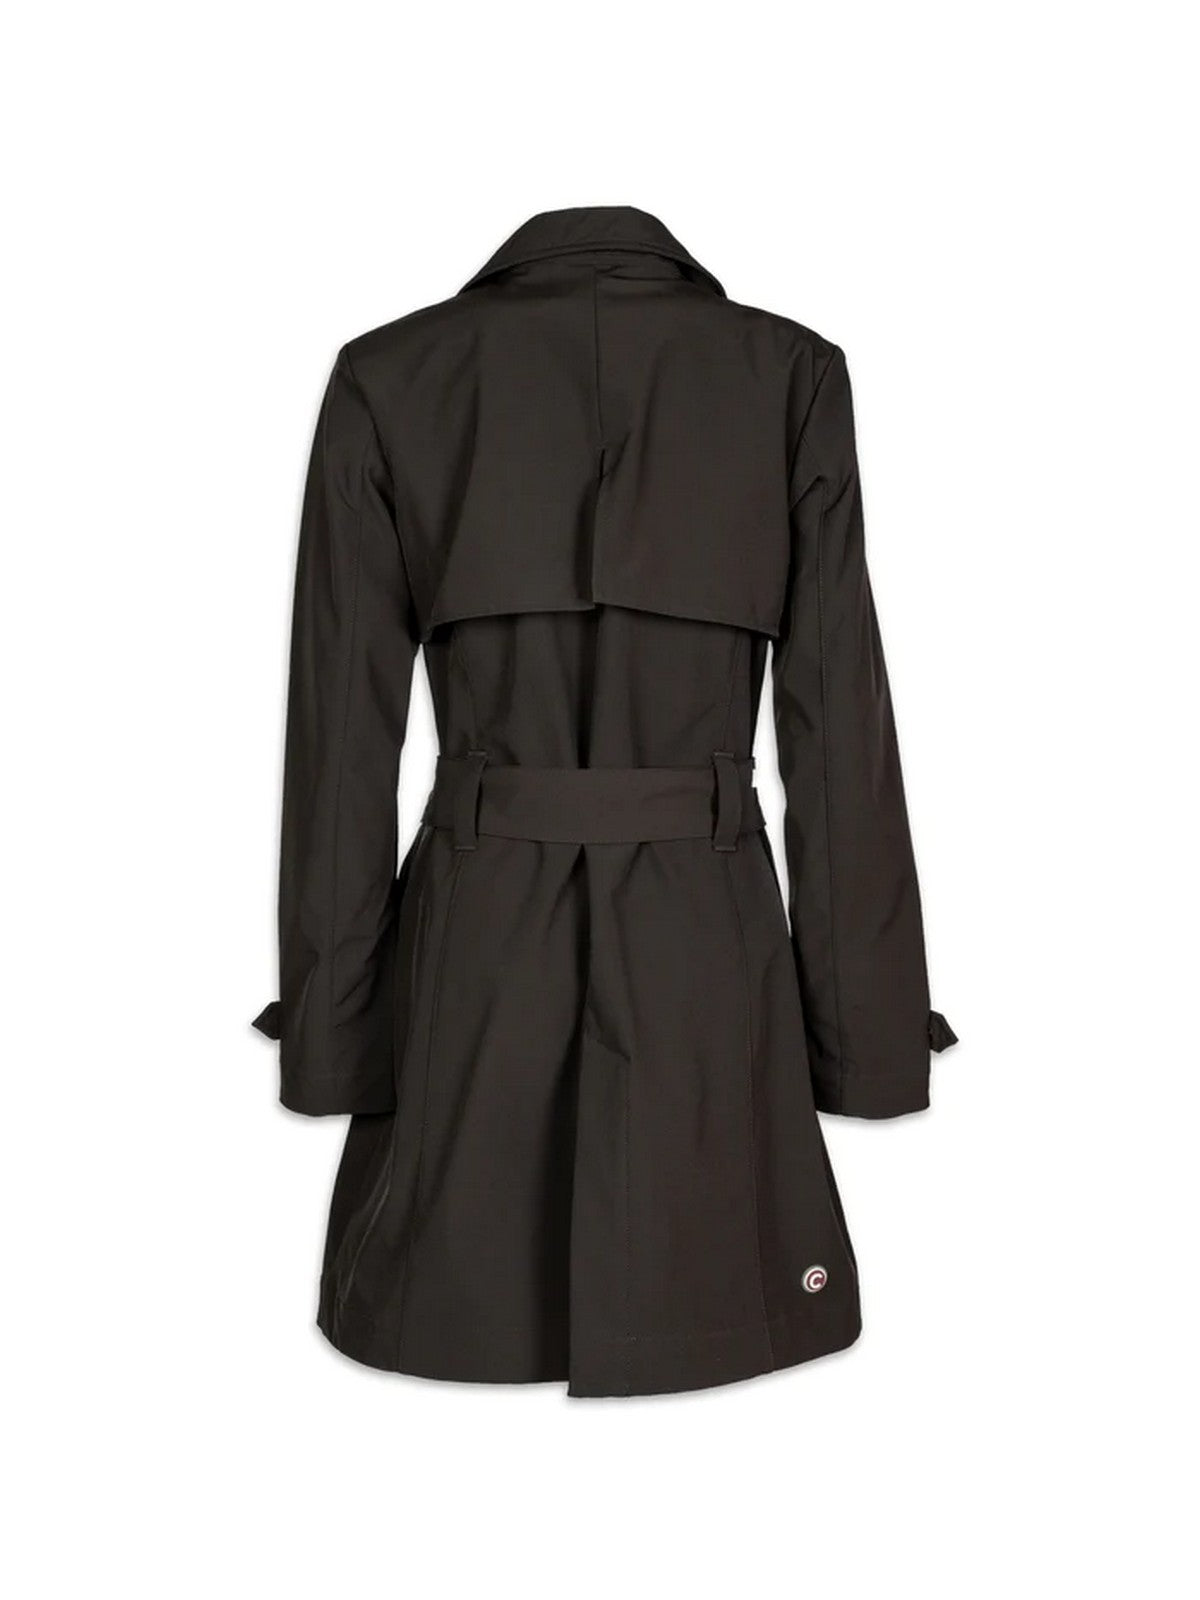 COLMAR Trench-coat femme 1934 6WV 99 Noir TISSU:92%POLYESTER + 8%ELASTANE